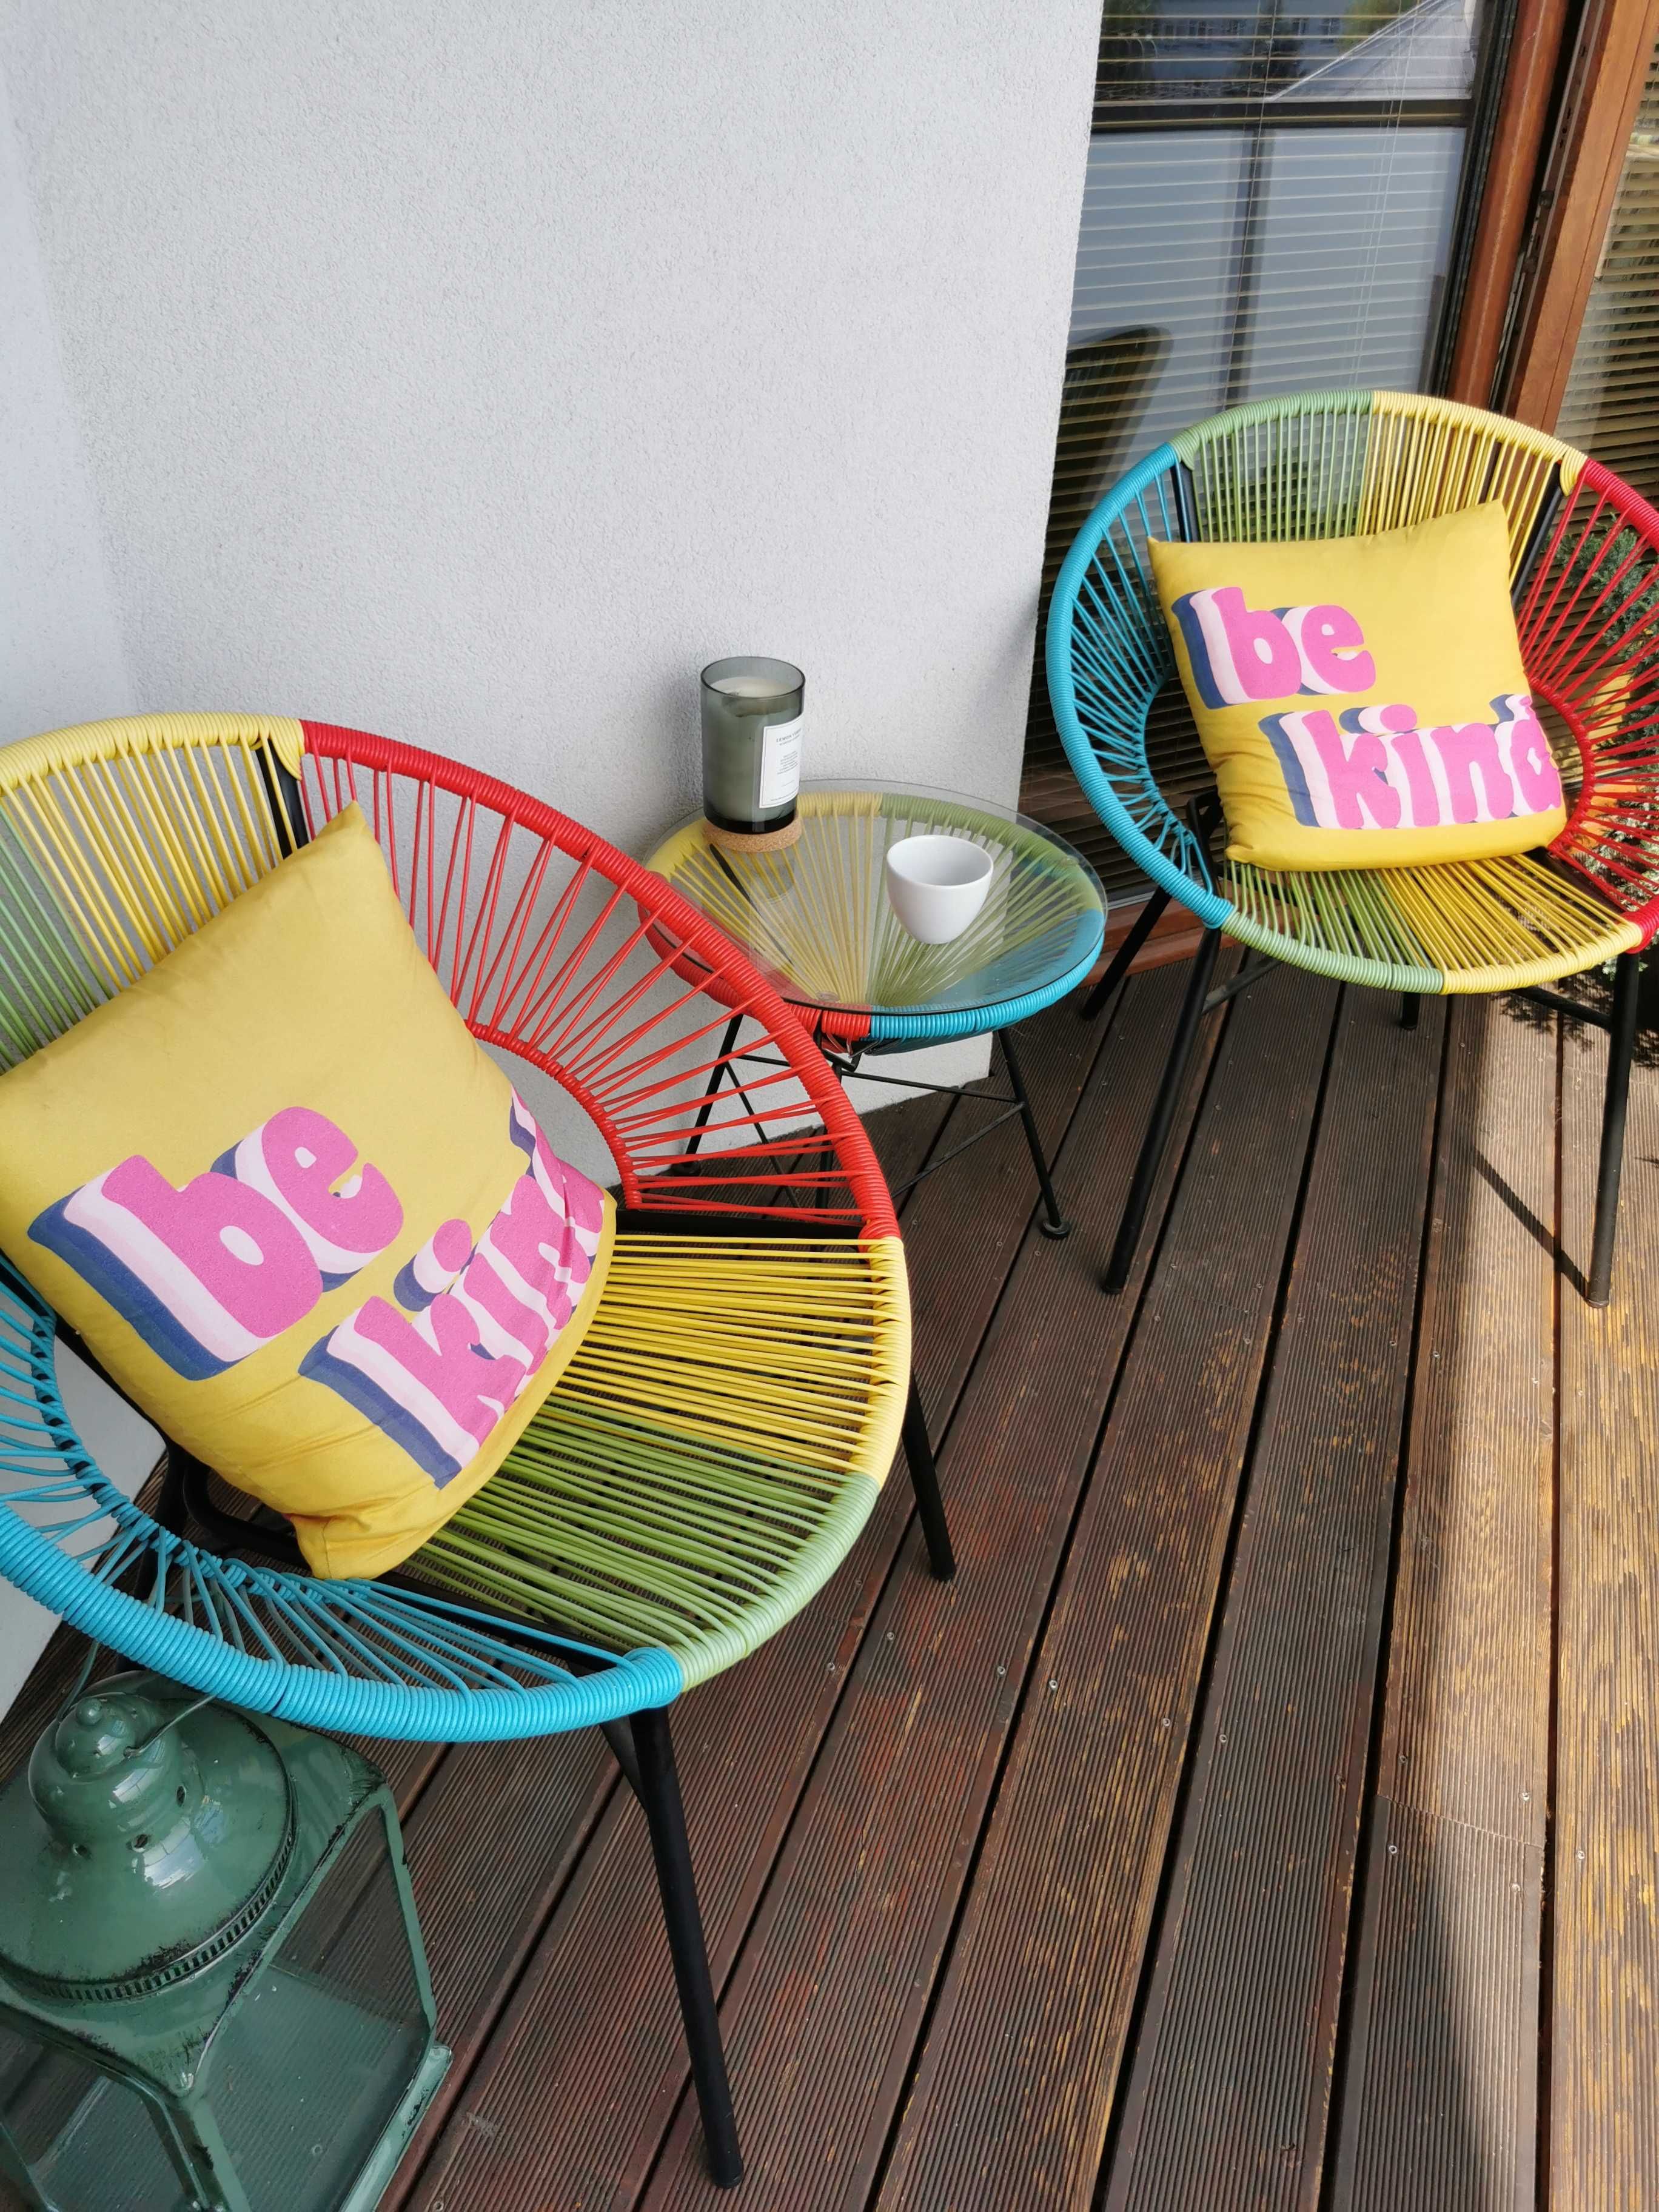 Zestaw kawowy balkon taras ogród stolik fotele krzesła stół